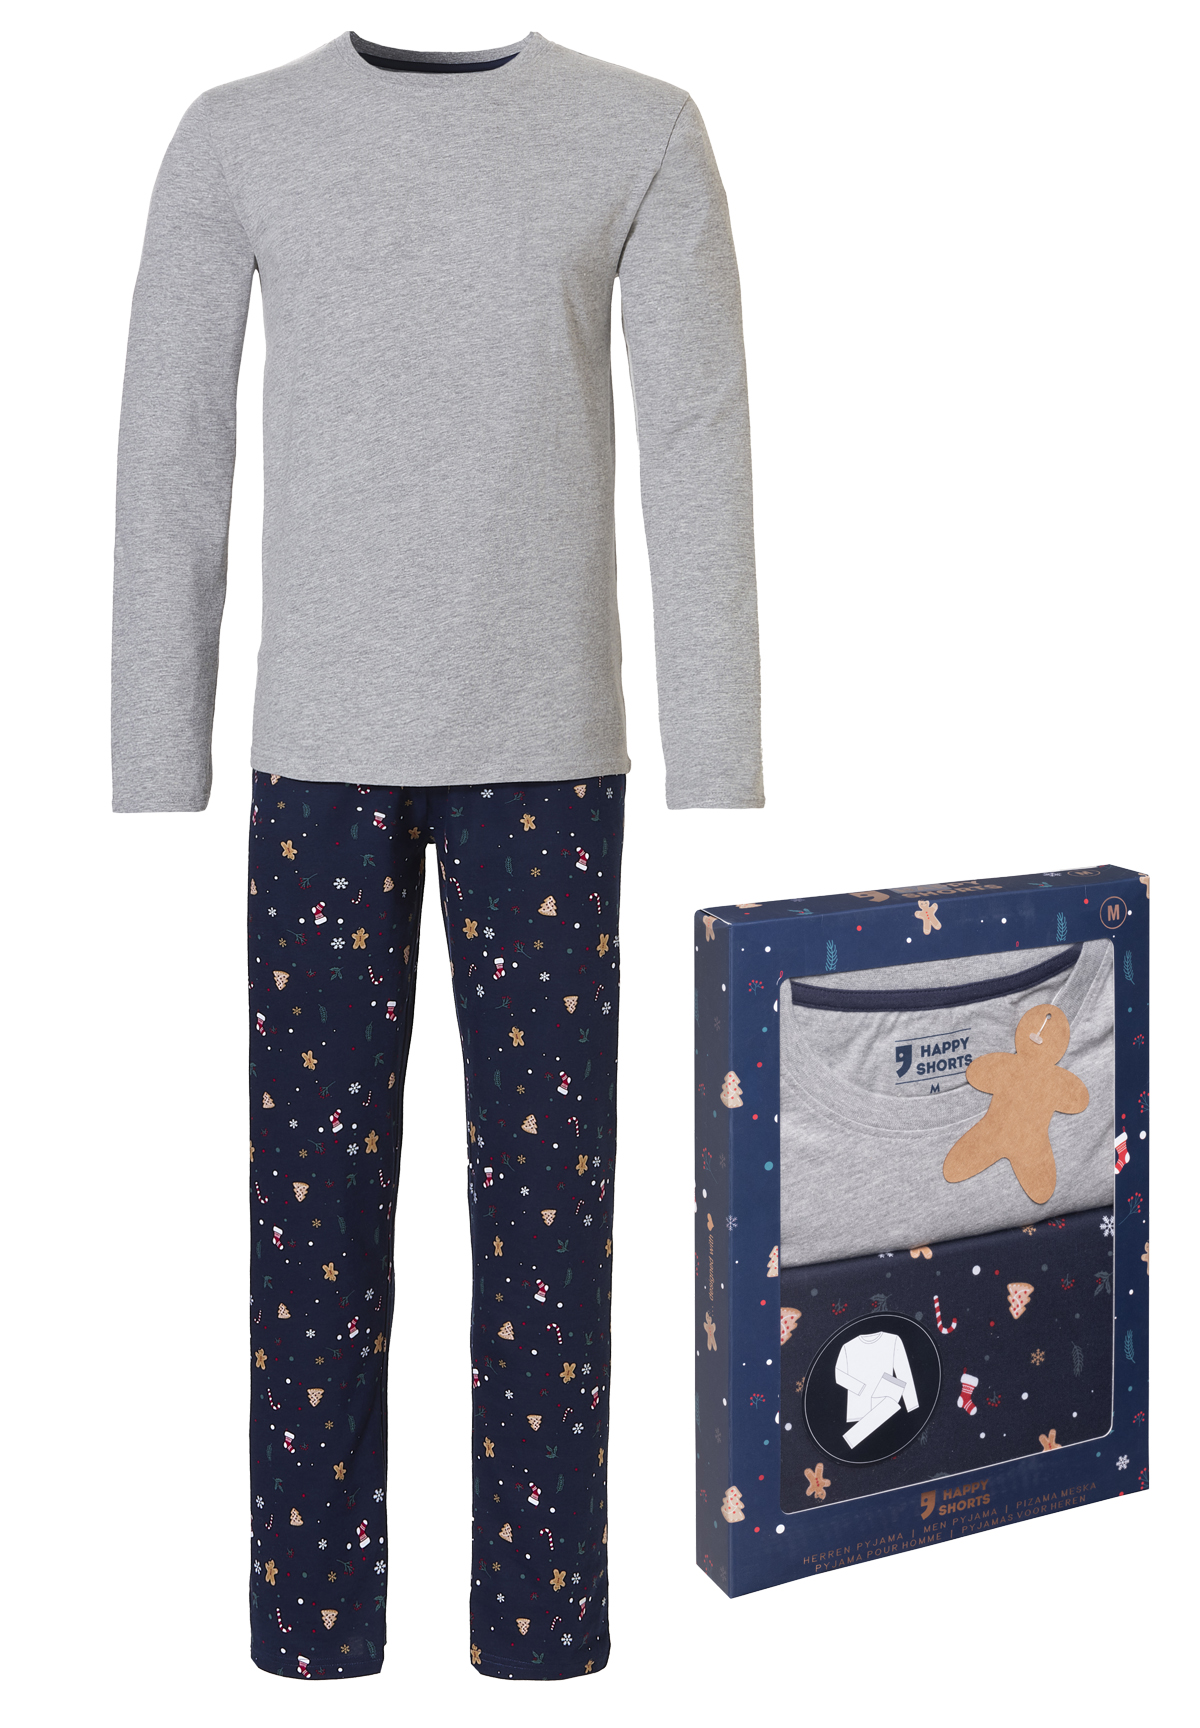 Afbeelding van Happy Shorts Heren kerst pyjama set shirt + pyjamabroek giftbox